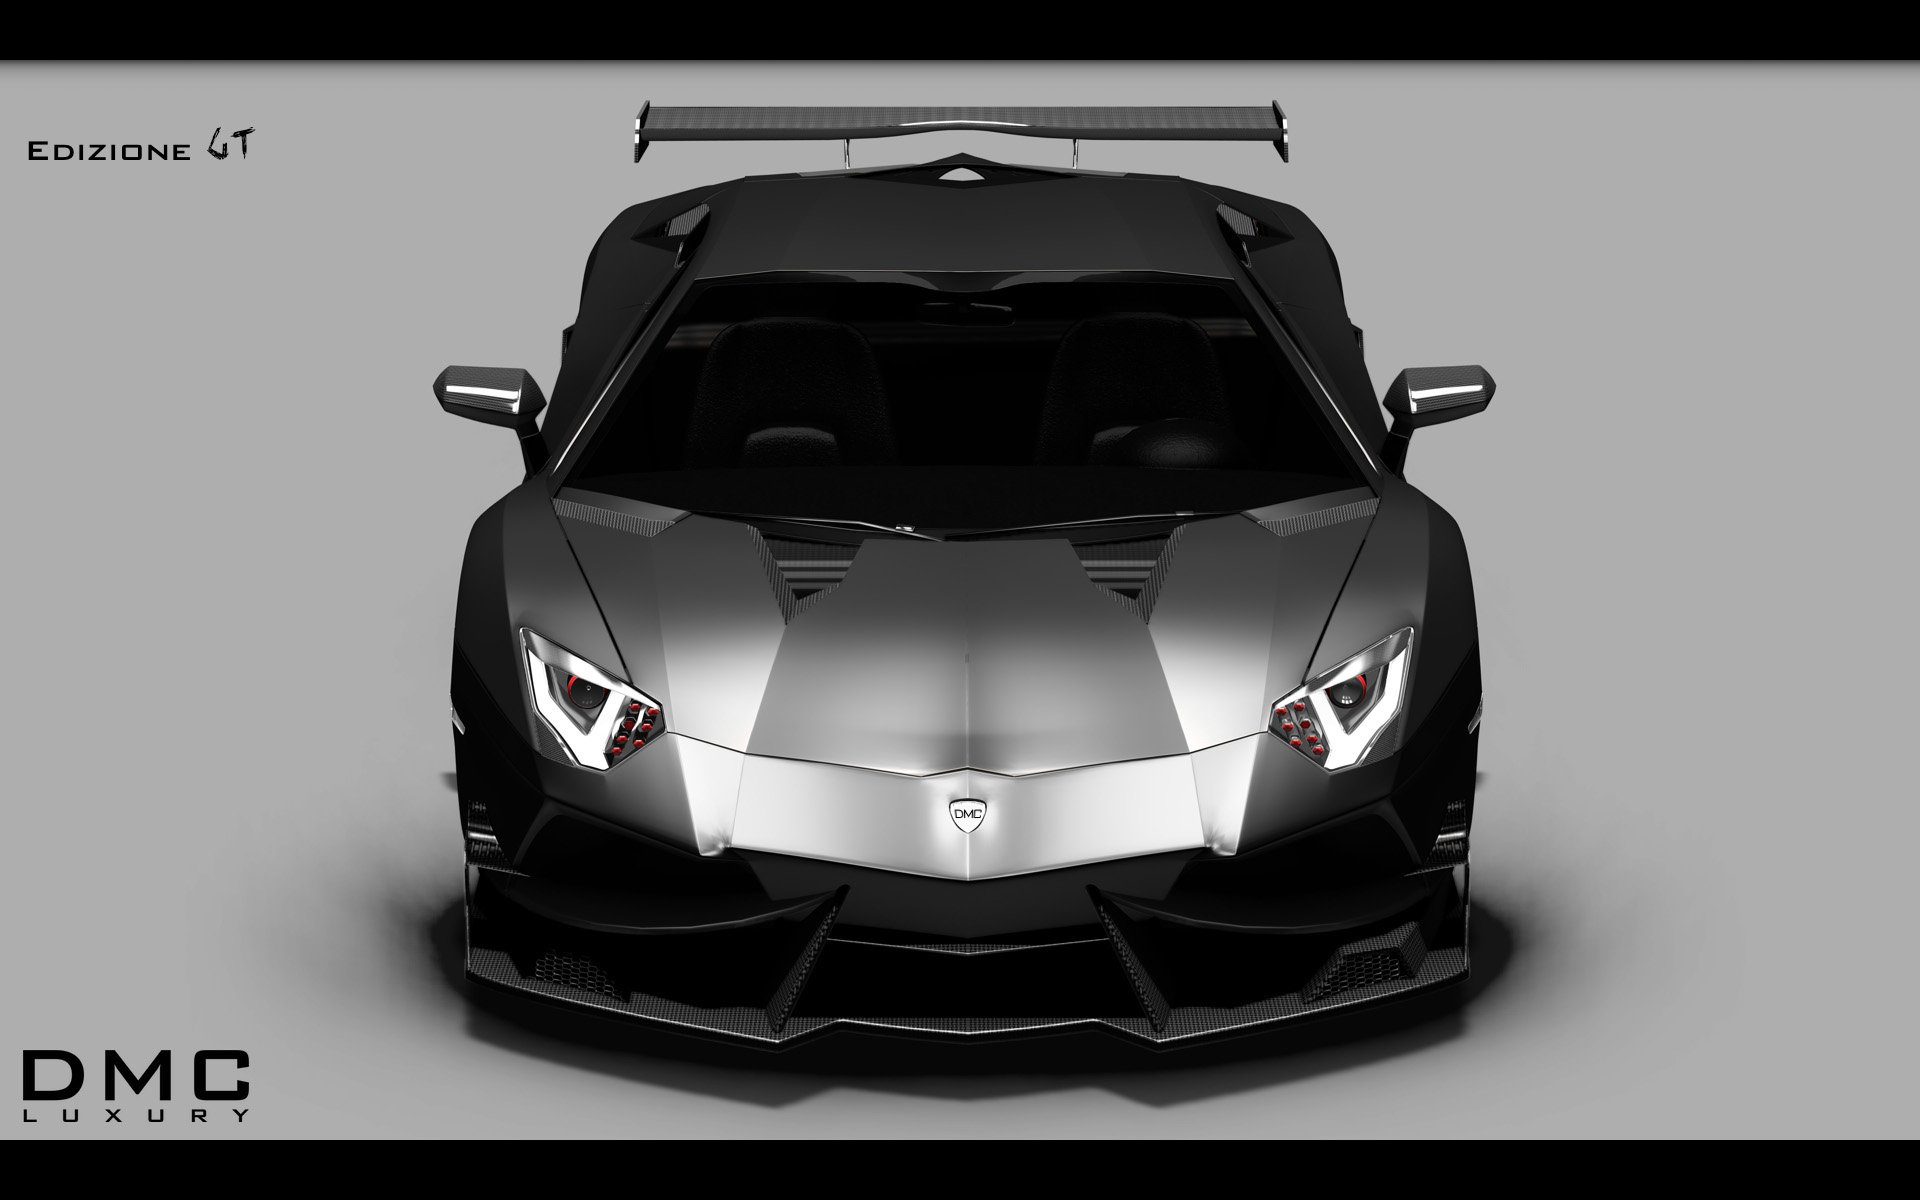 2014, Dmc, Lamborghini, Aventador, Lp988, Edizione, G t, Supercar, R2 Wallpaper